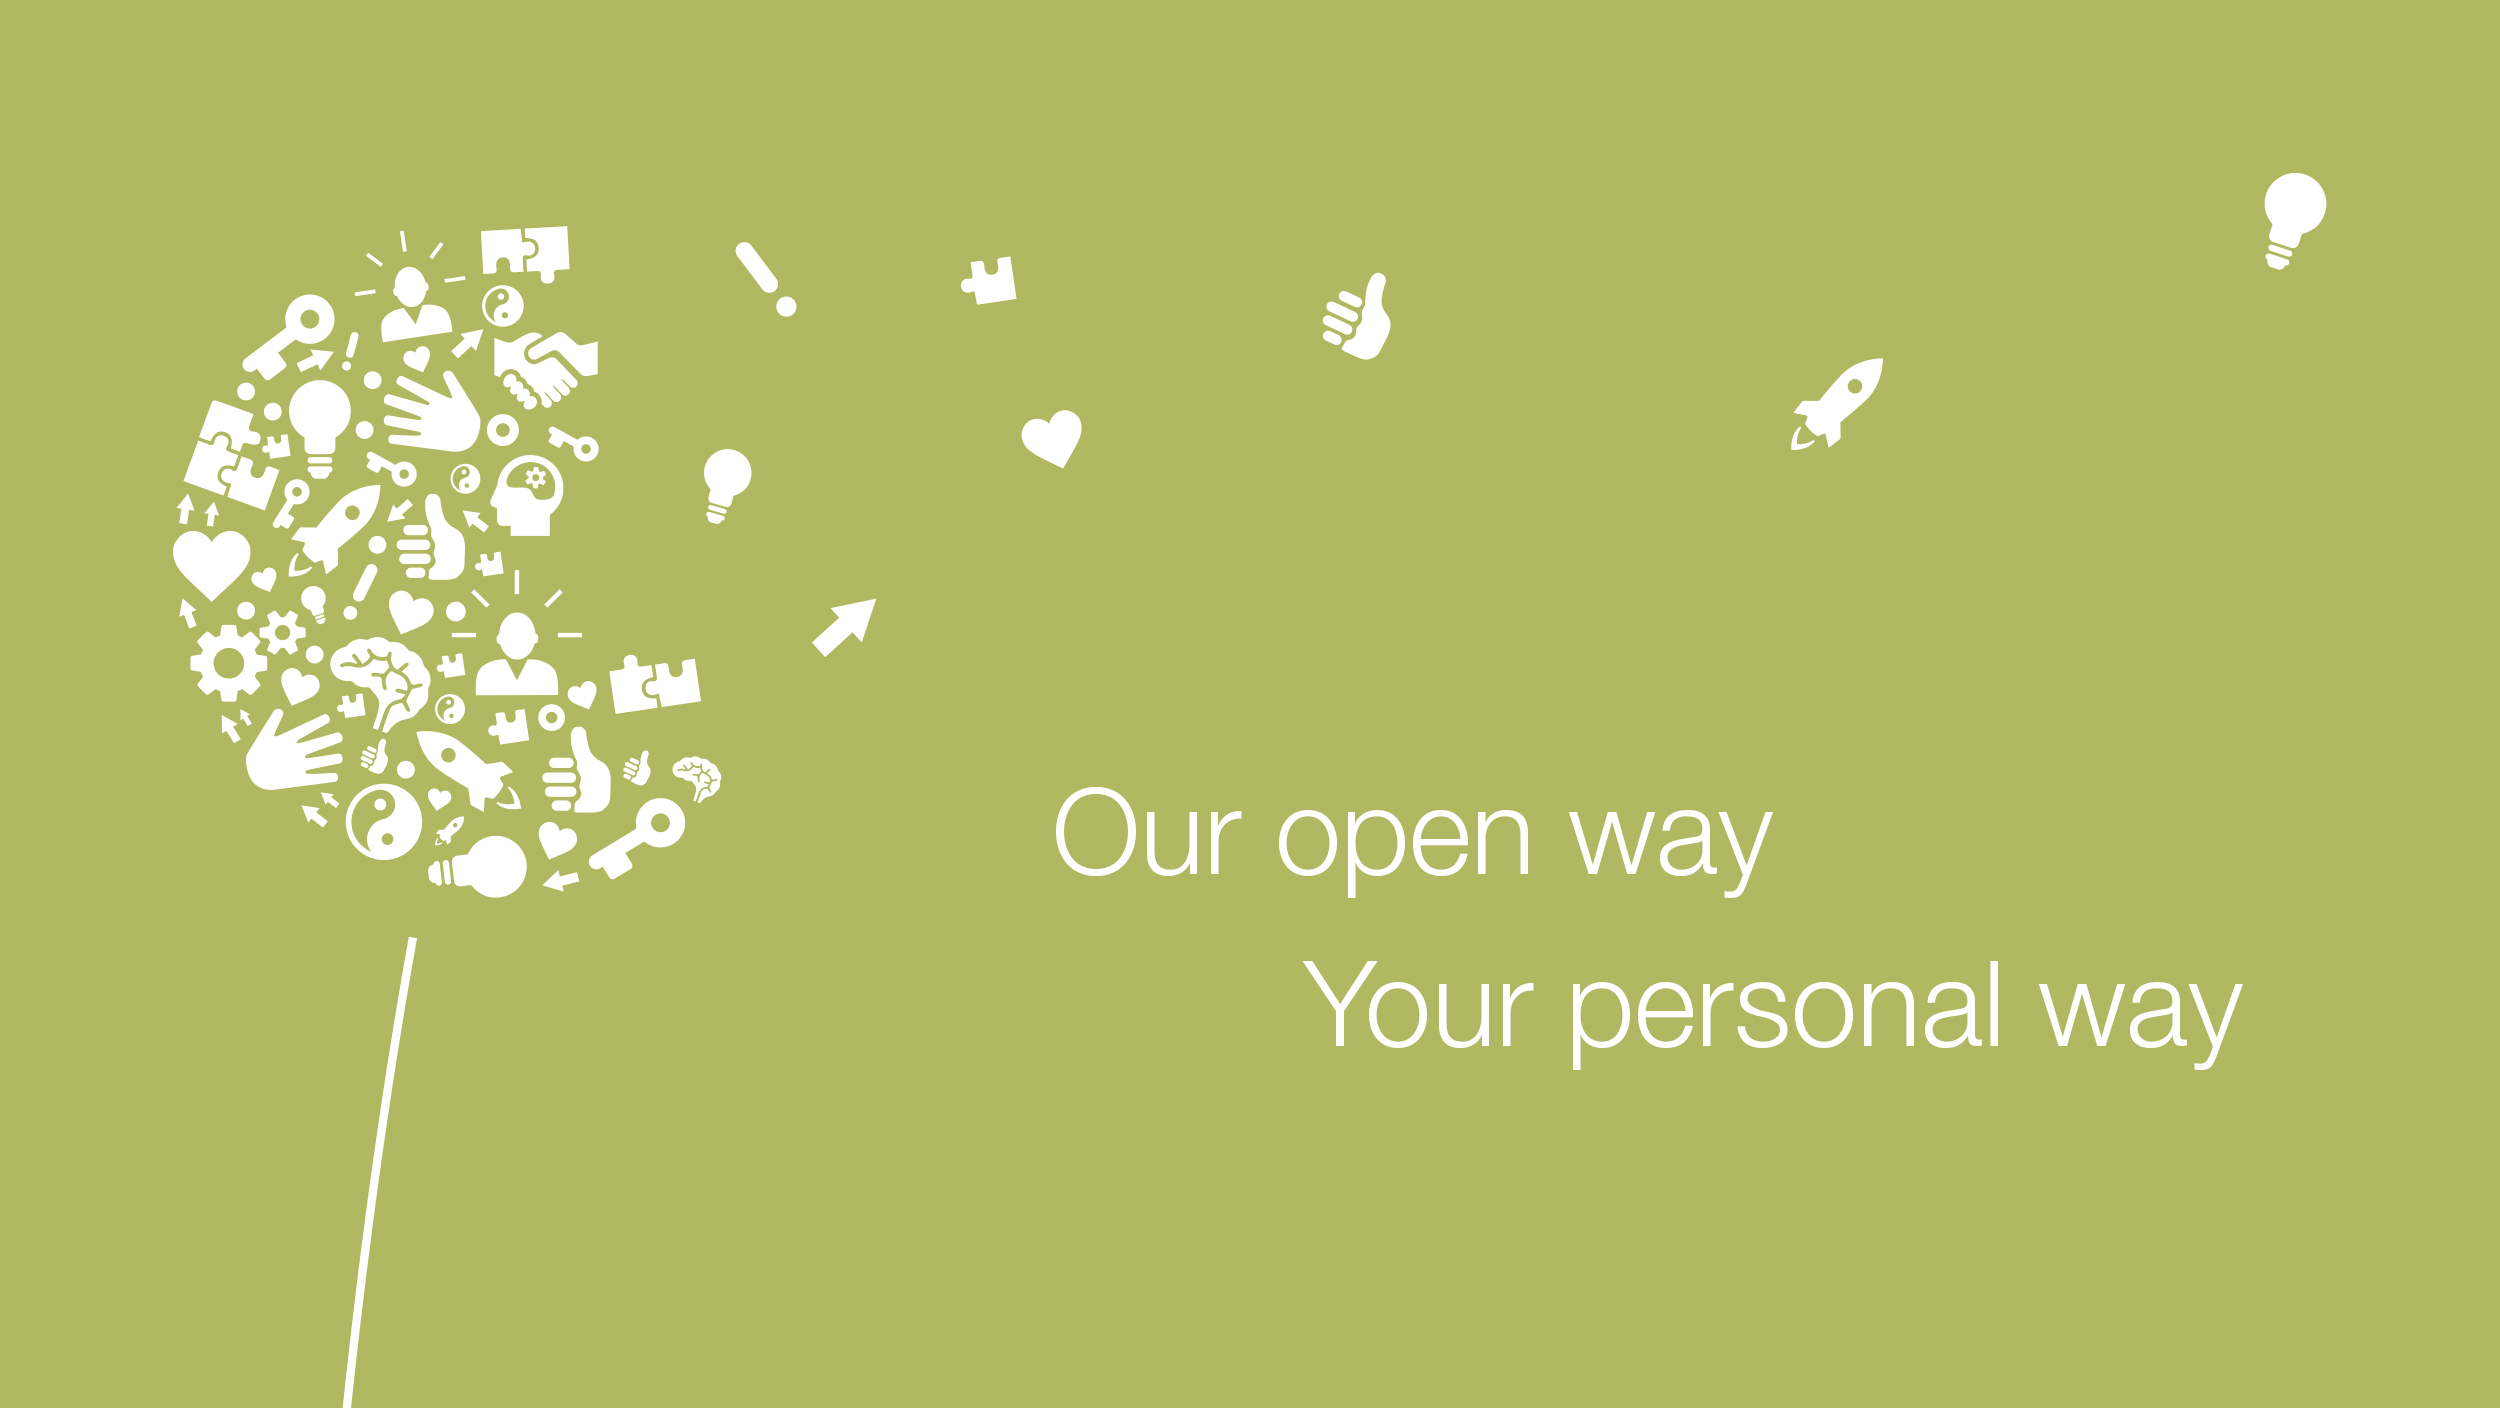 Pusteblume aus verschiedenen Icons, daben der Slogan: Our open way Your personal way